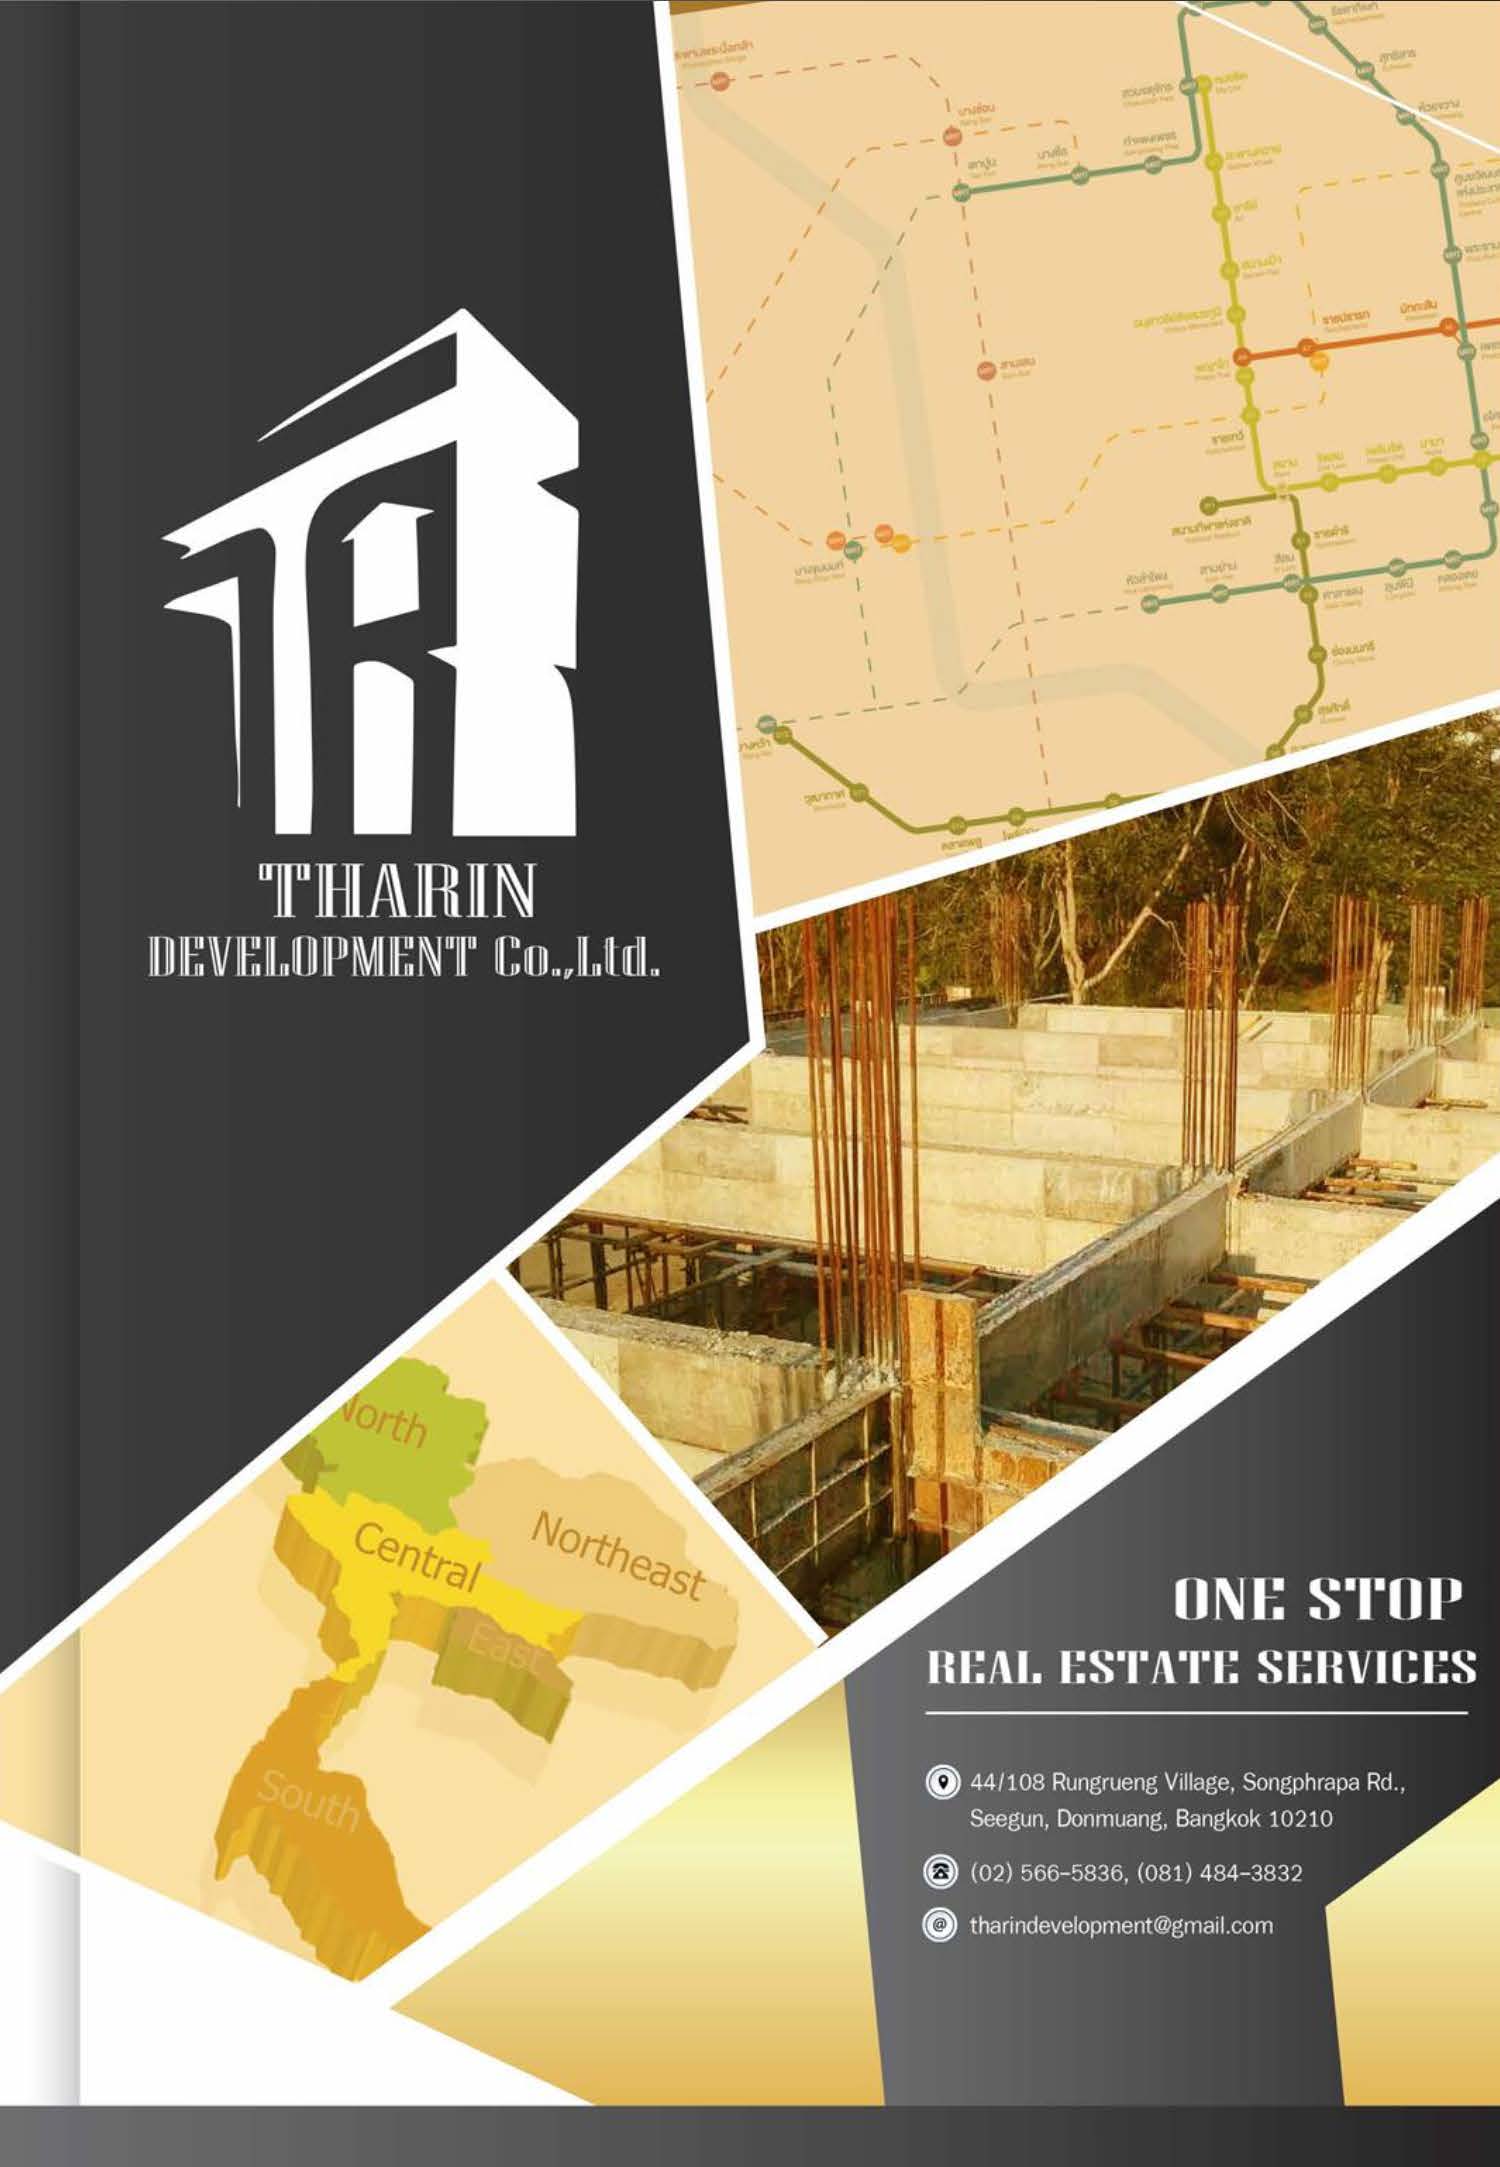 Tarin Development Co., Ltd.